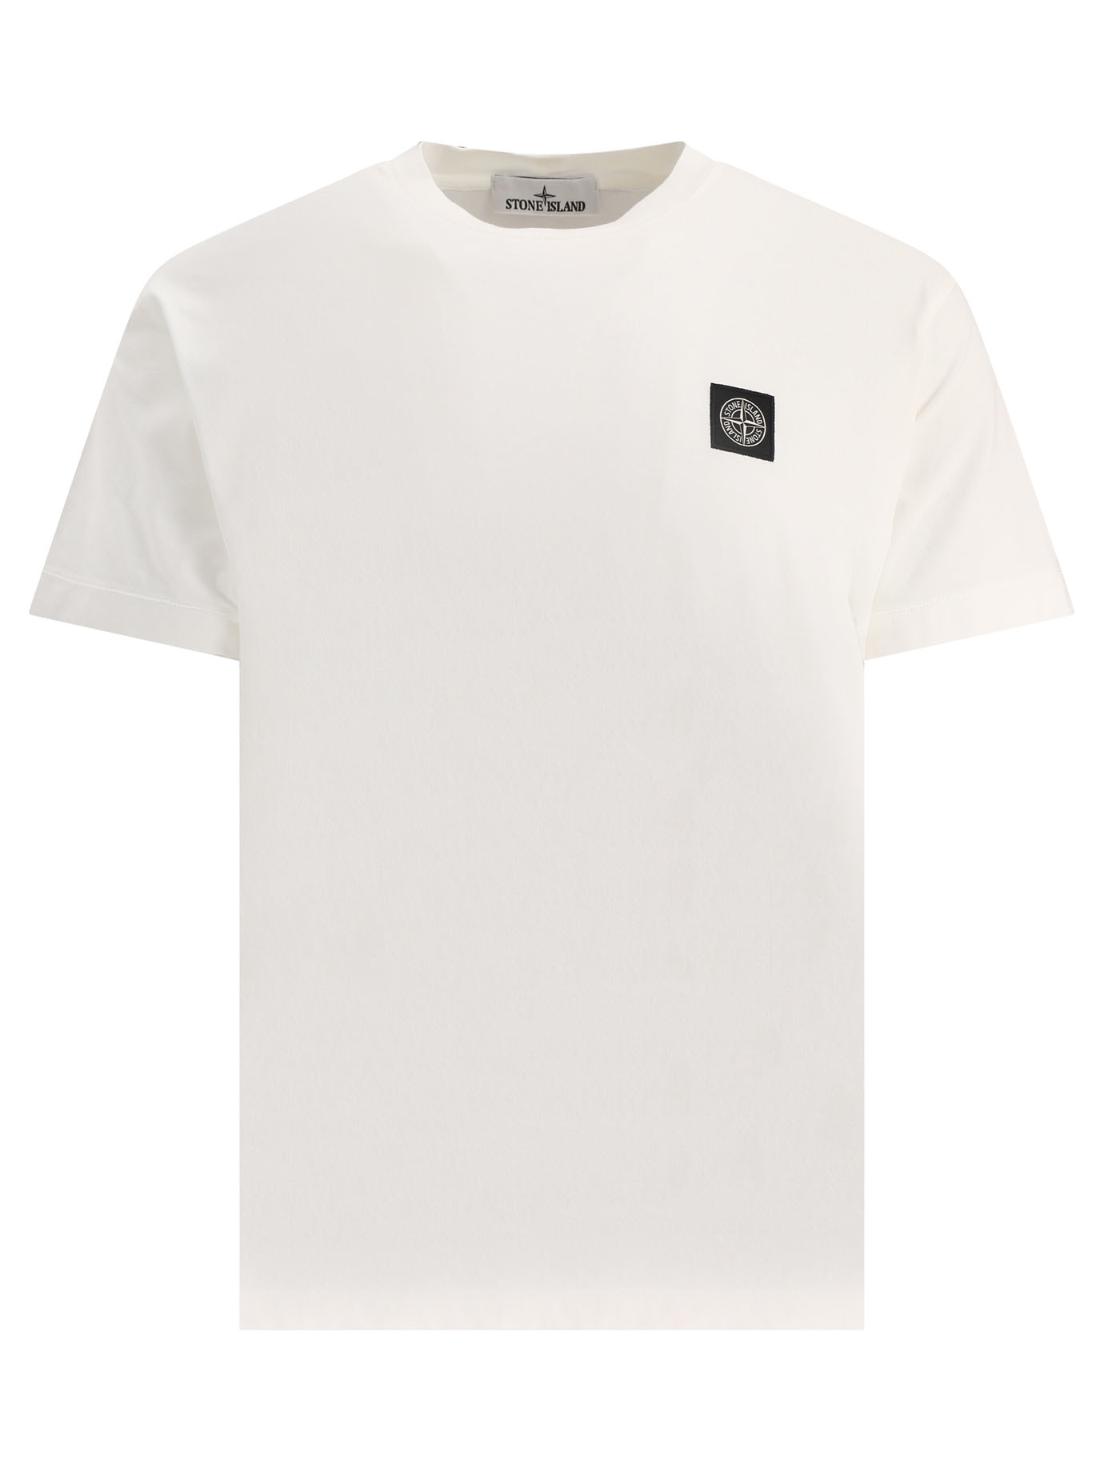 [해외직구 관부가세 포함] 스톤아일랜드 화이트 T셔츠 with patch 771524113V0001